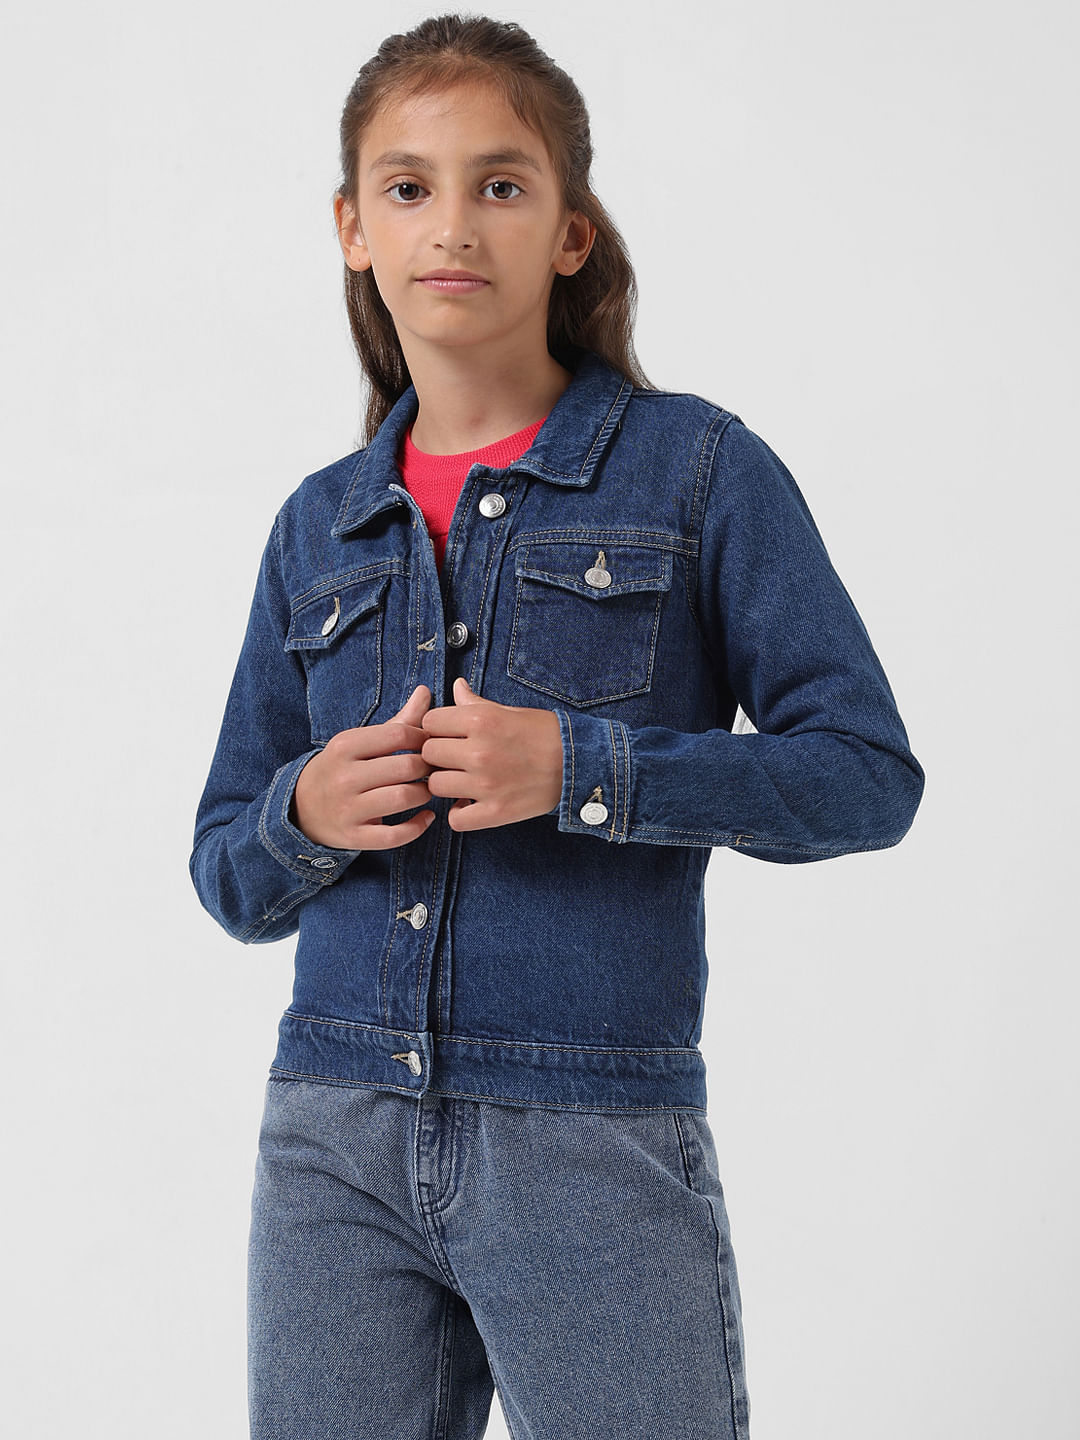 SS Dresses Full Sleeve Solid Girls Denim Jacket - Buy SS Dresses Full  Sleeve Solid Girls Denim Jacket Online at Best Prices in India |  Flipkart.com